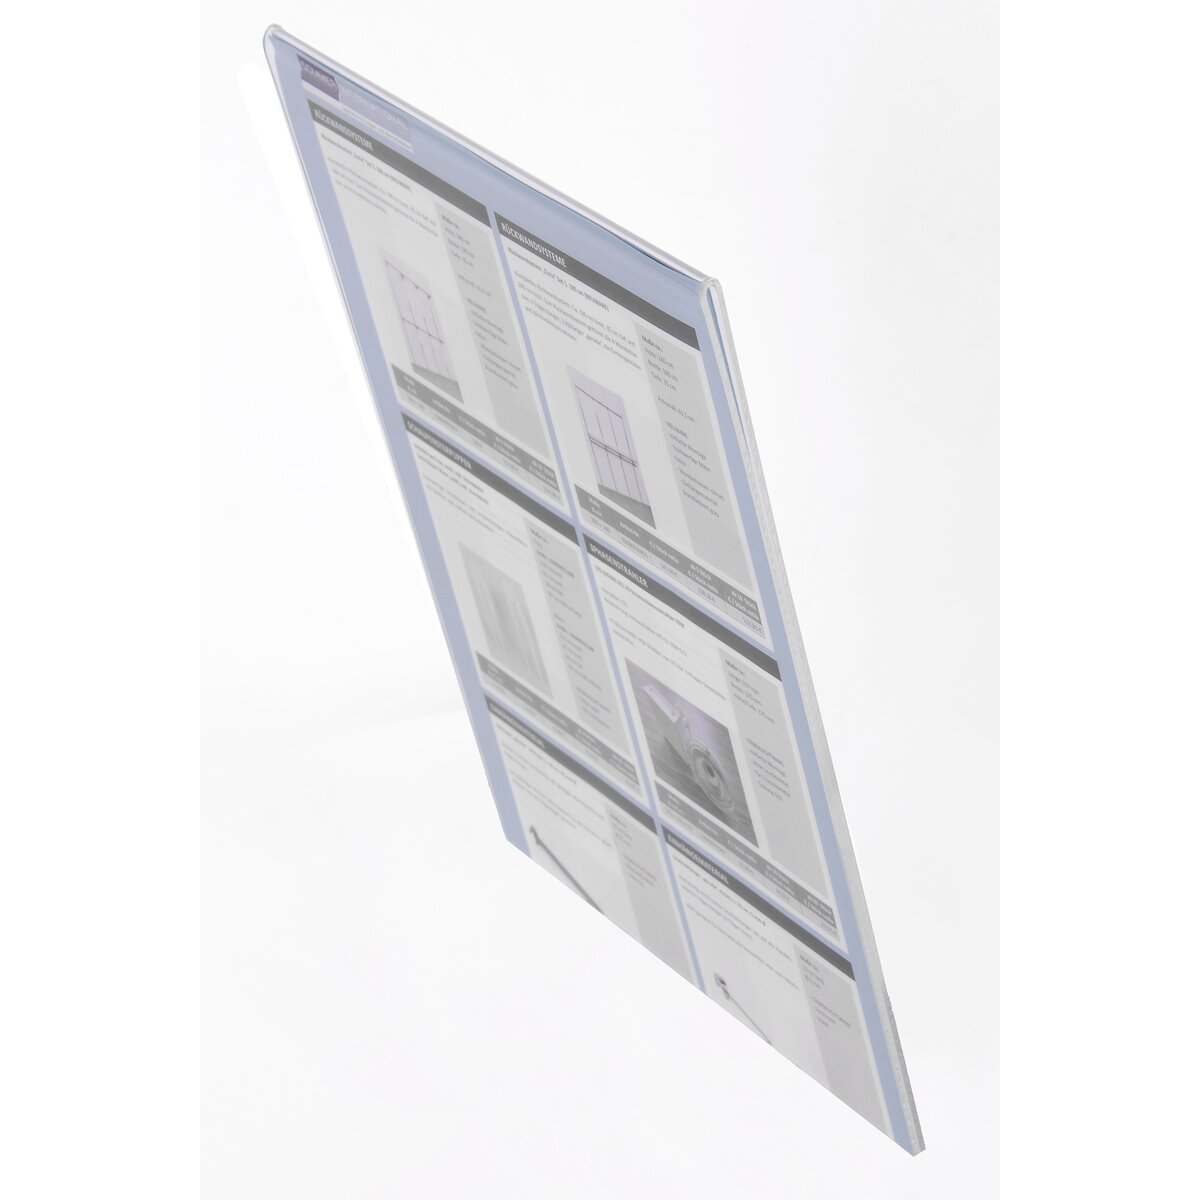 3mm dick, A3 Formate A5/A4/A3 erhältlich Displaypro Acrylglasscheibe/Plexiglasplatte Gelb/glänzend 